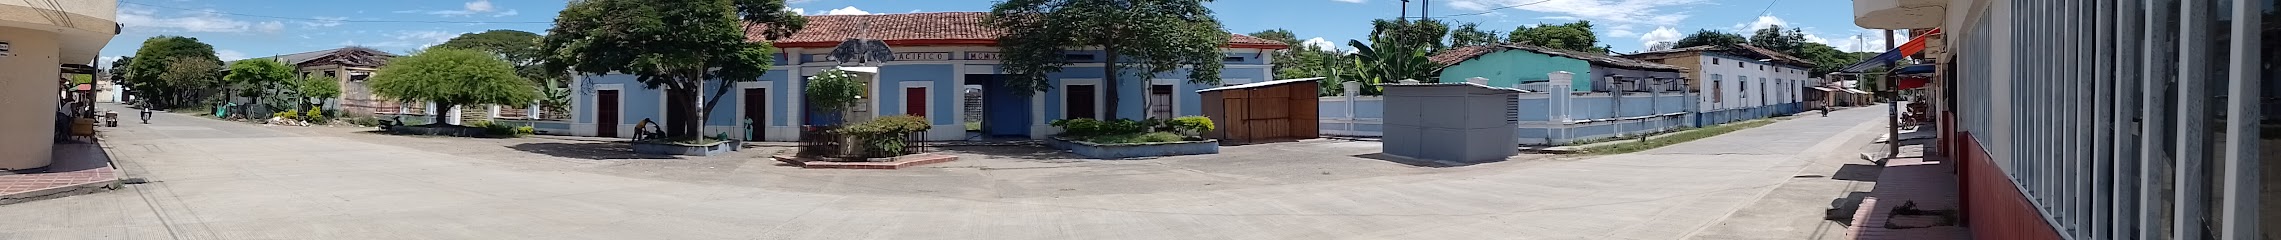 Plaza La Villa